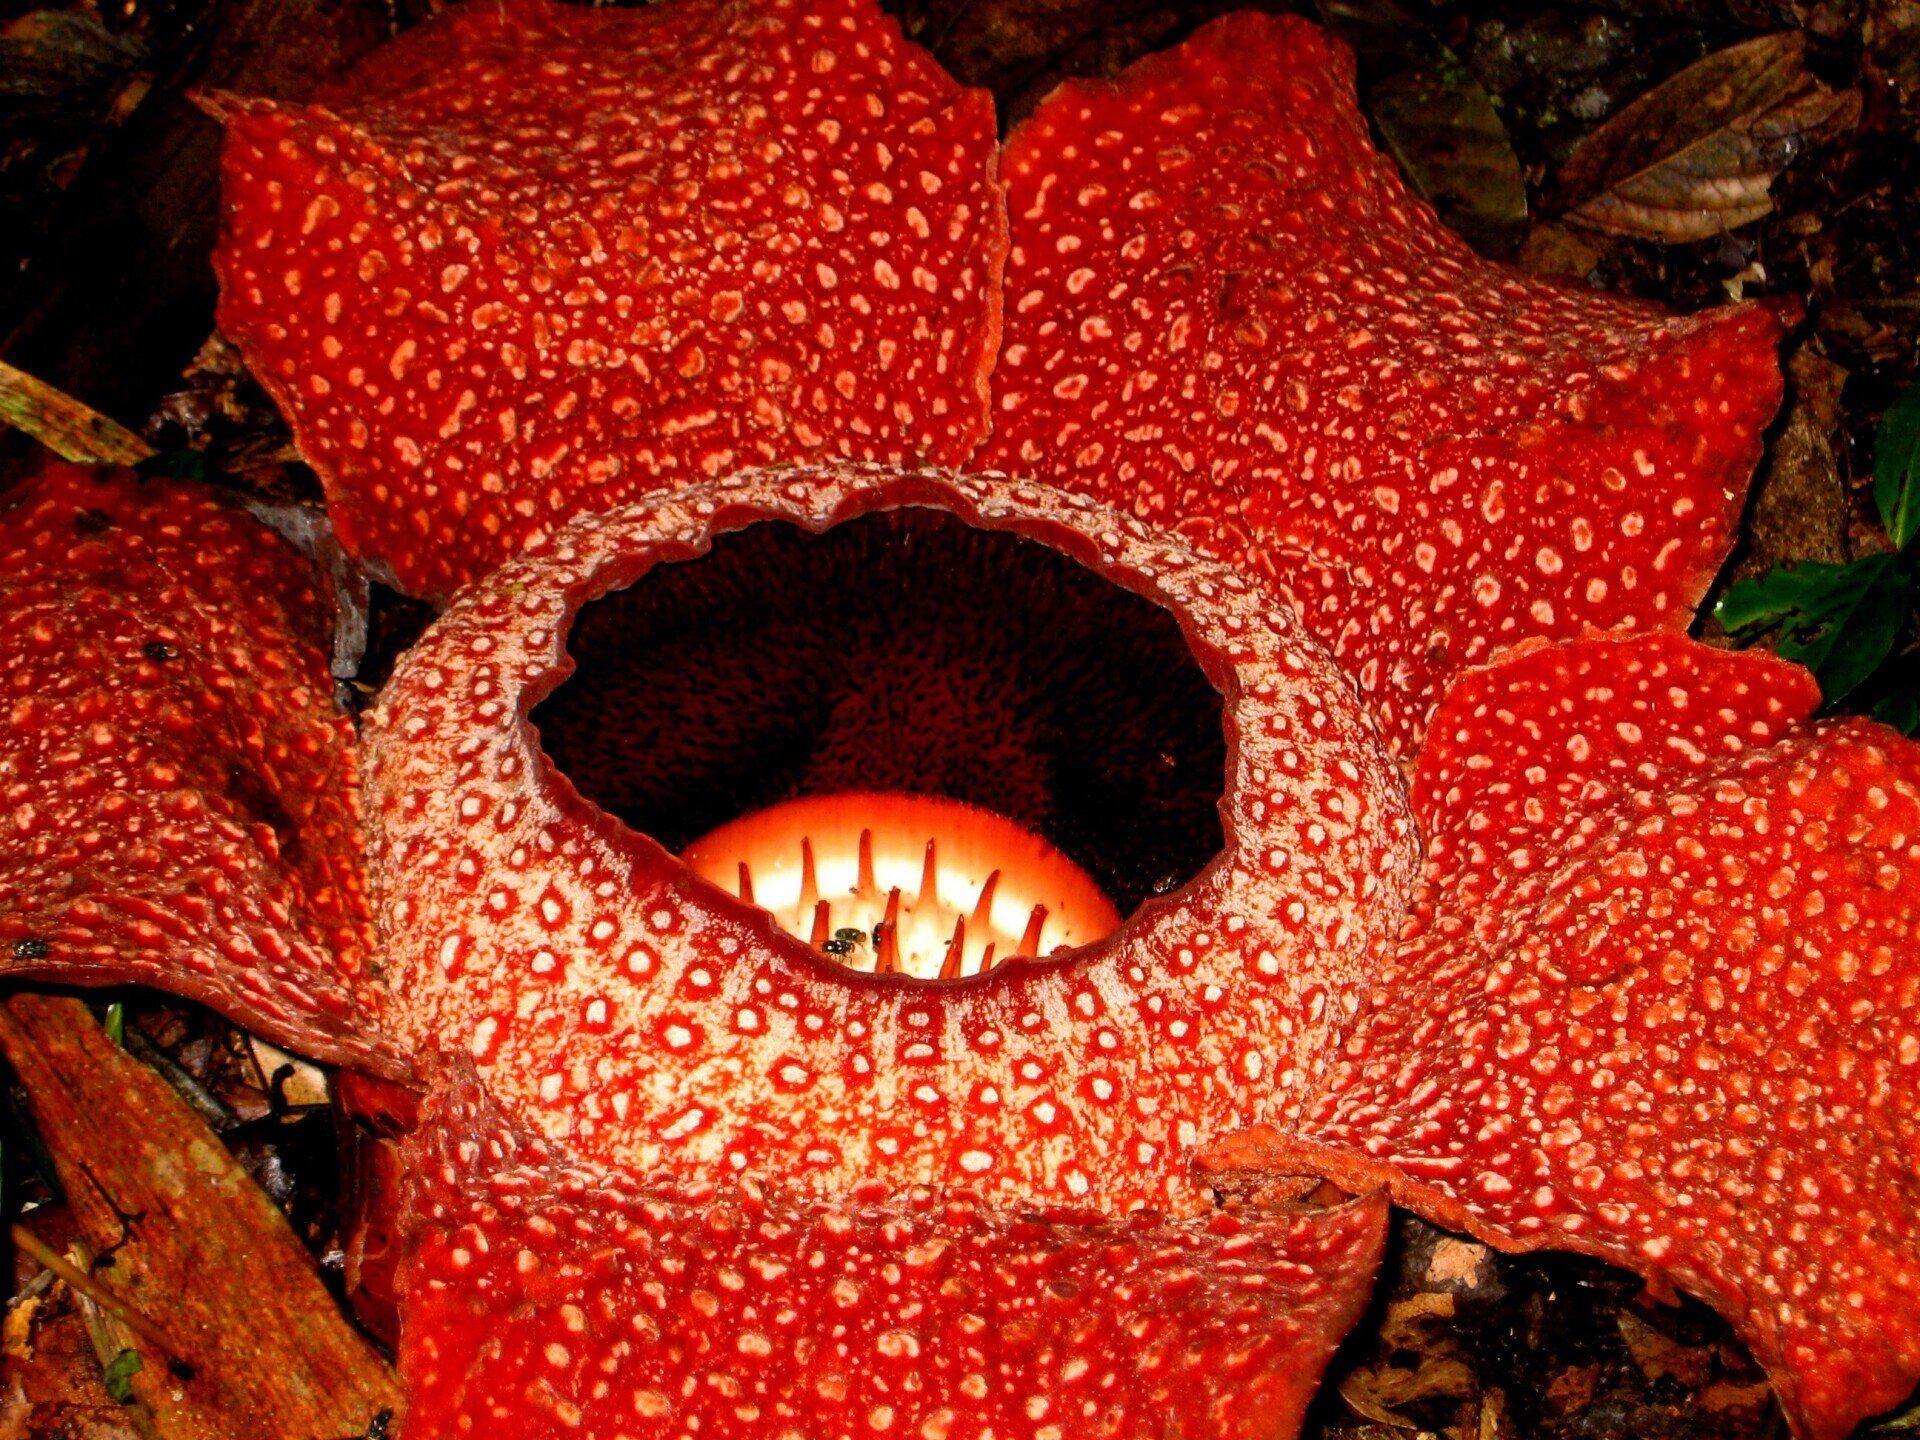 Rafflesia in Poring - Diese größte Blütenpflanze der Welt wurde nach Thomas Stamford Raffles benannt, dem Begründer Singapurs